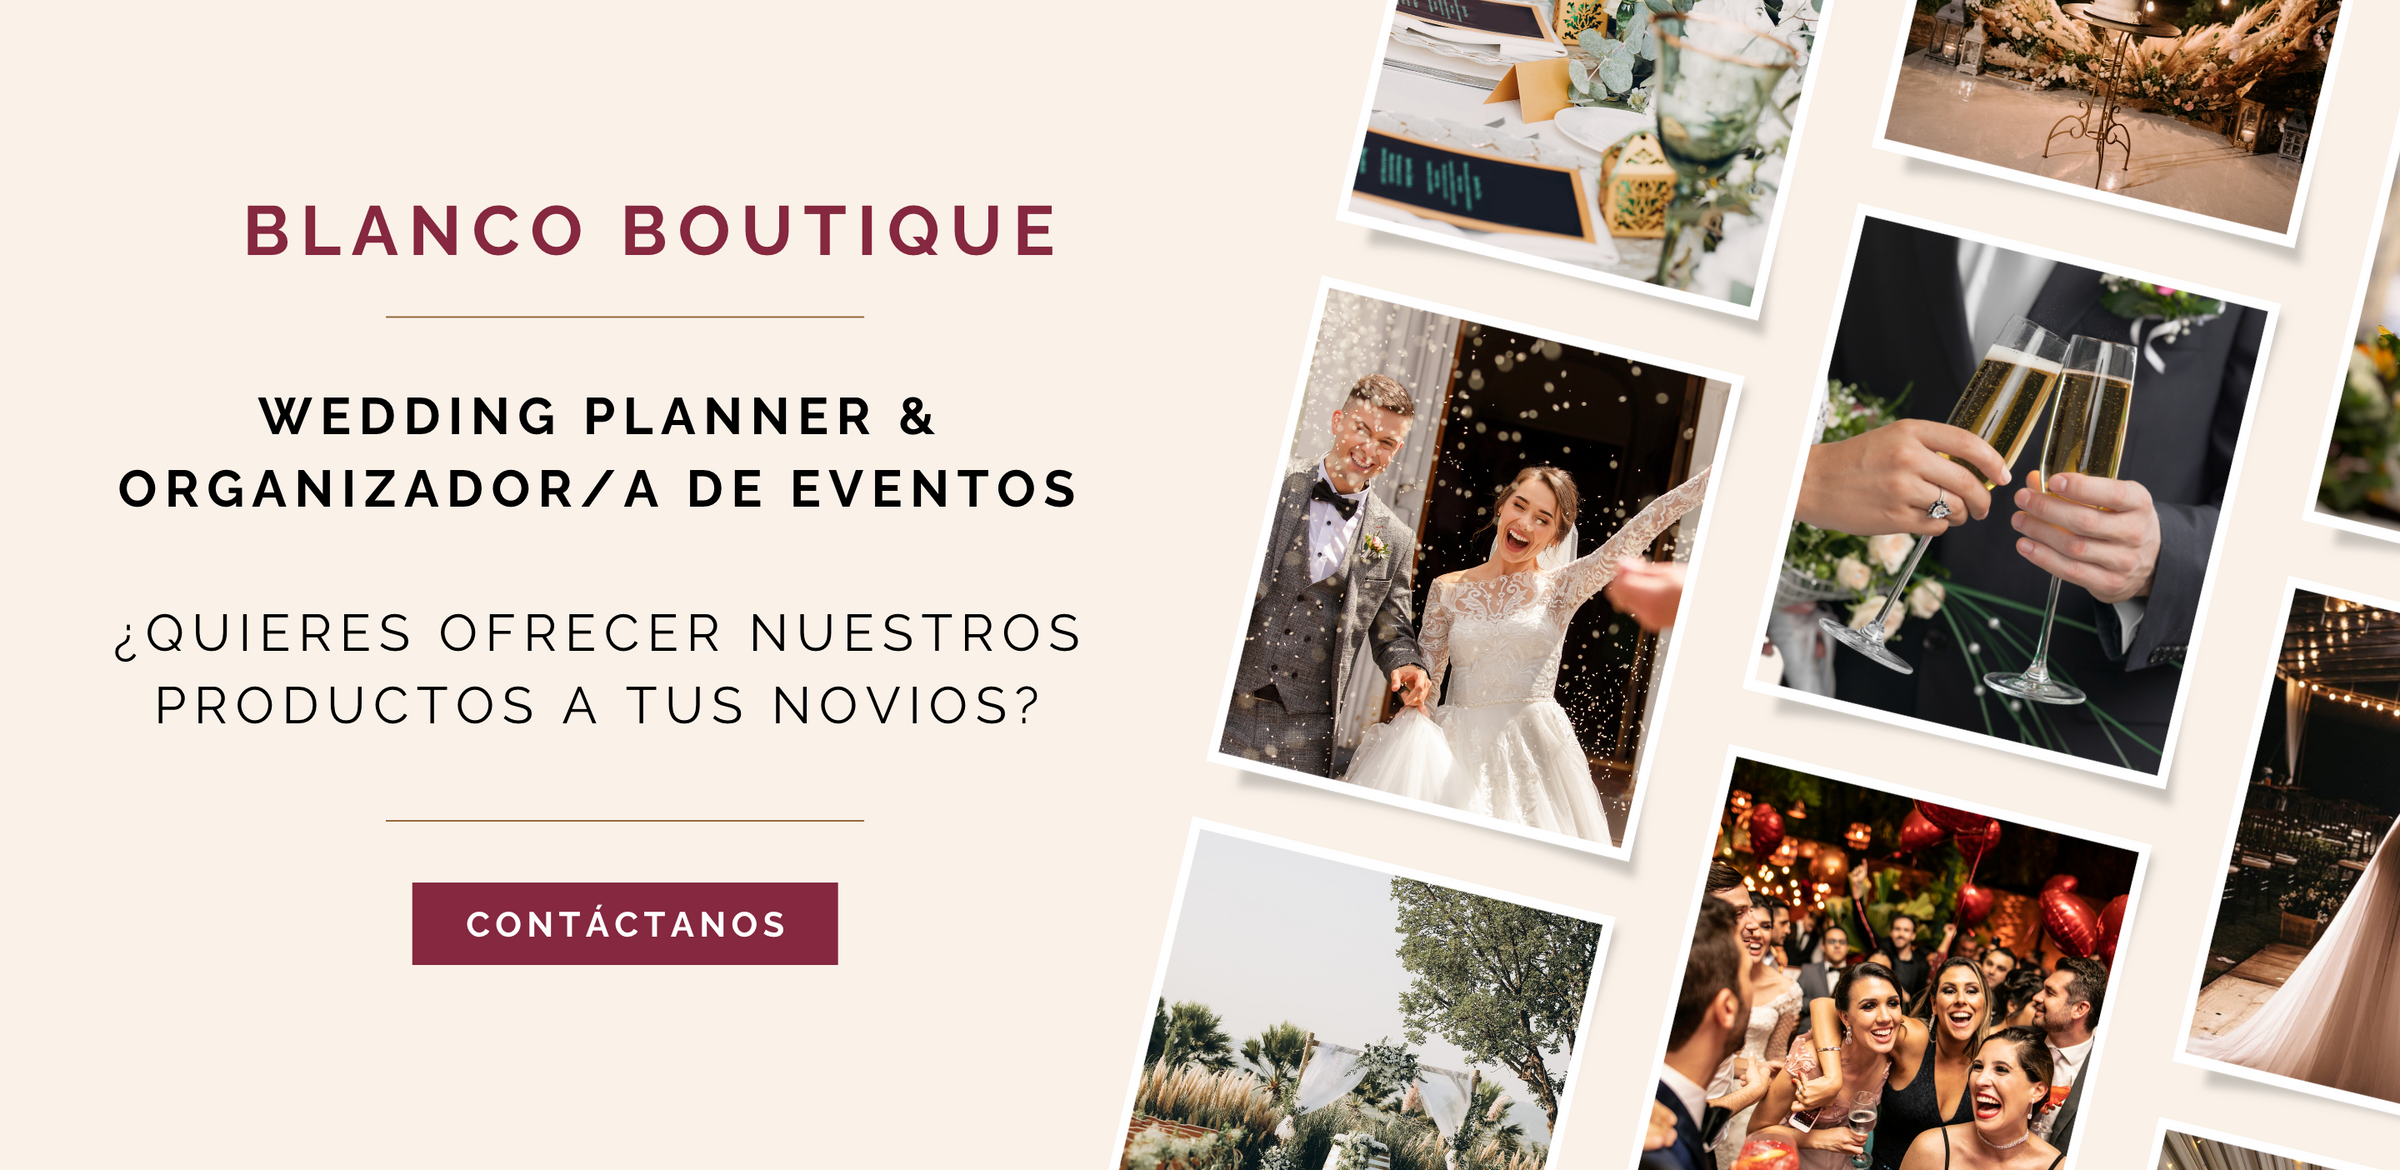 SERVICIO PARA WEDDING PLANNERS - BLANCO BOUTIQUE